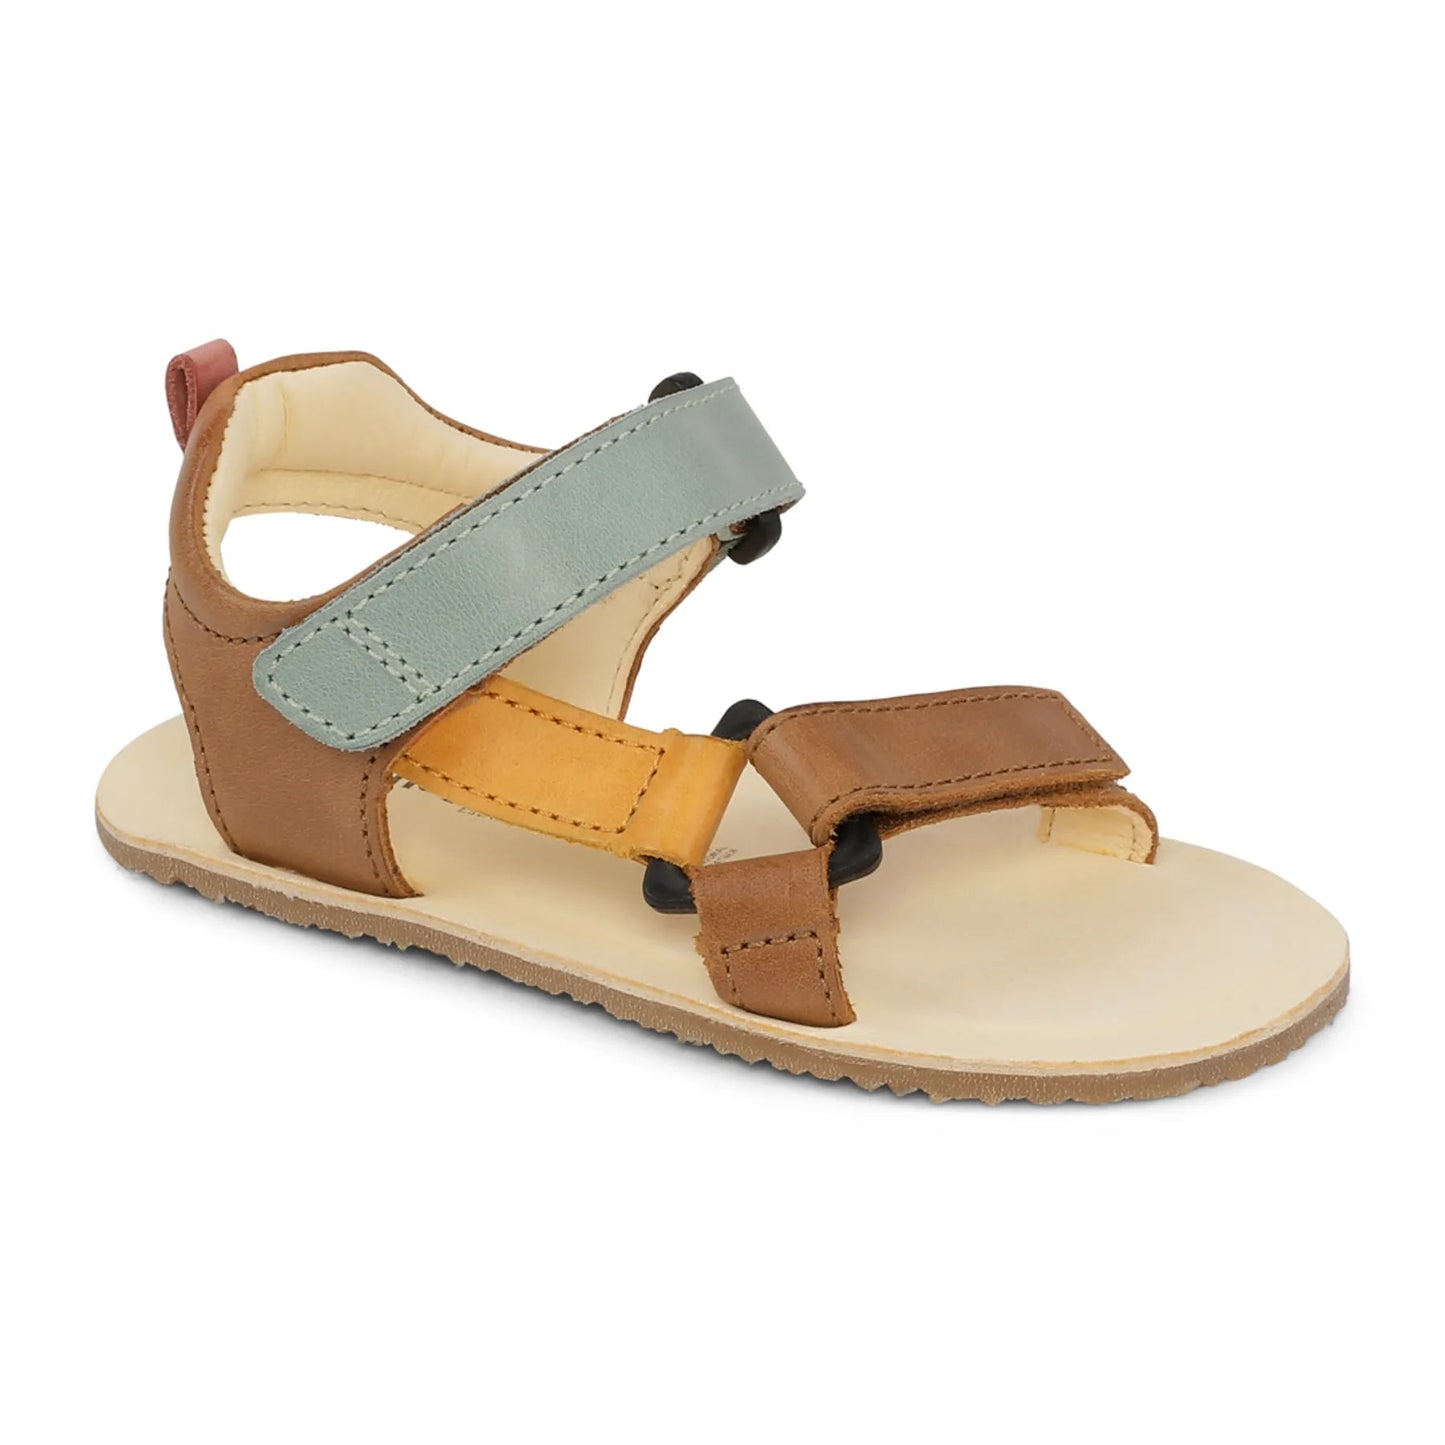 Bundgaard Skye barfods sandaler til børn i farven tan, yderside